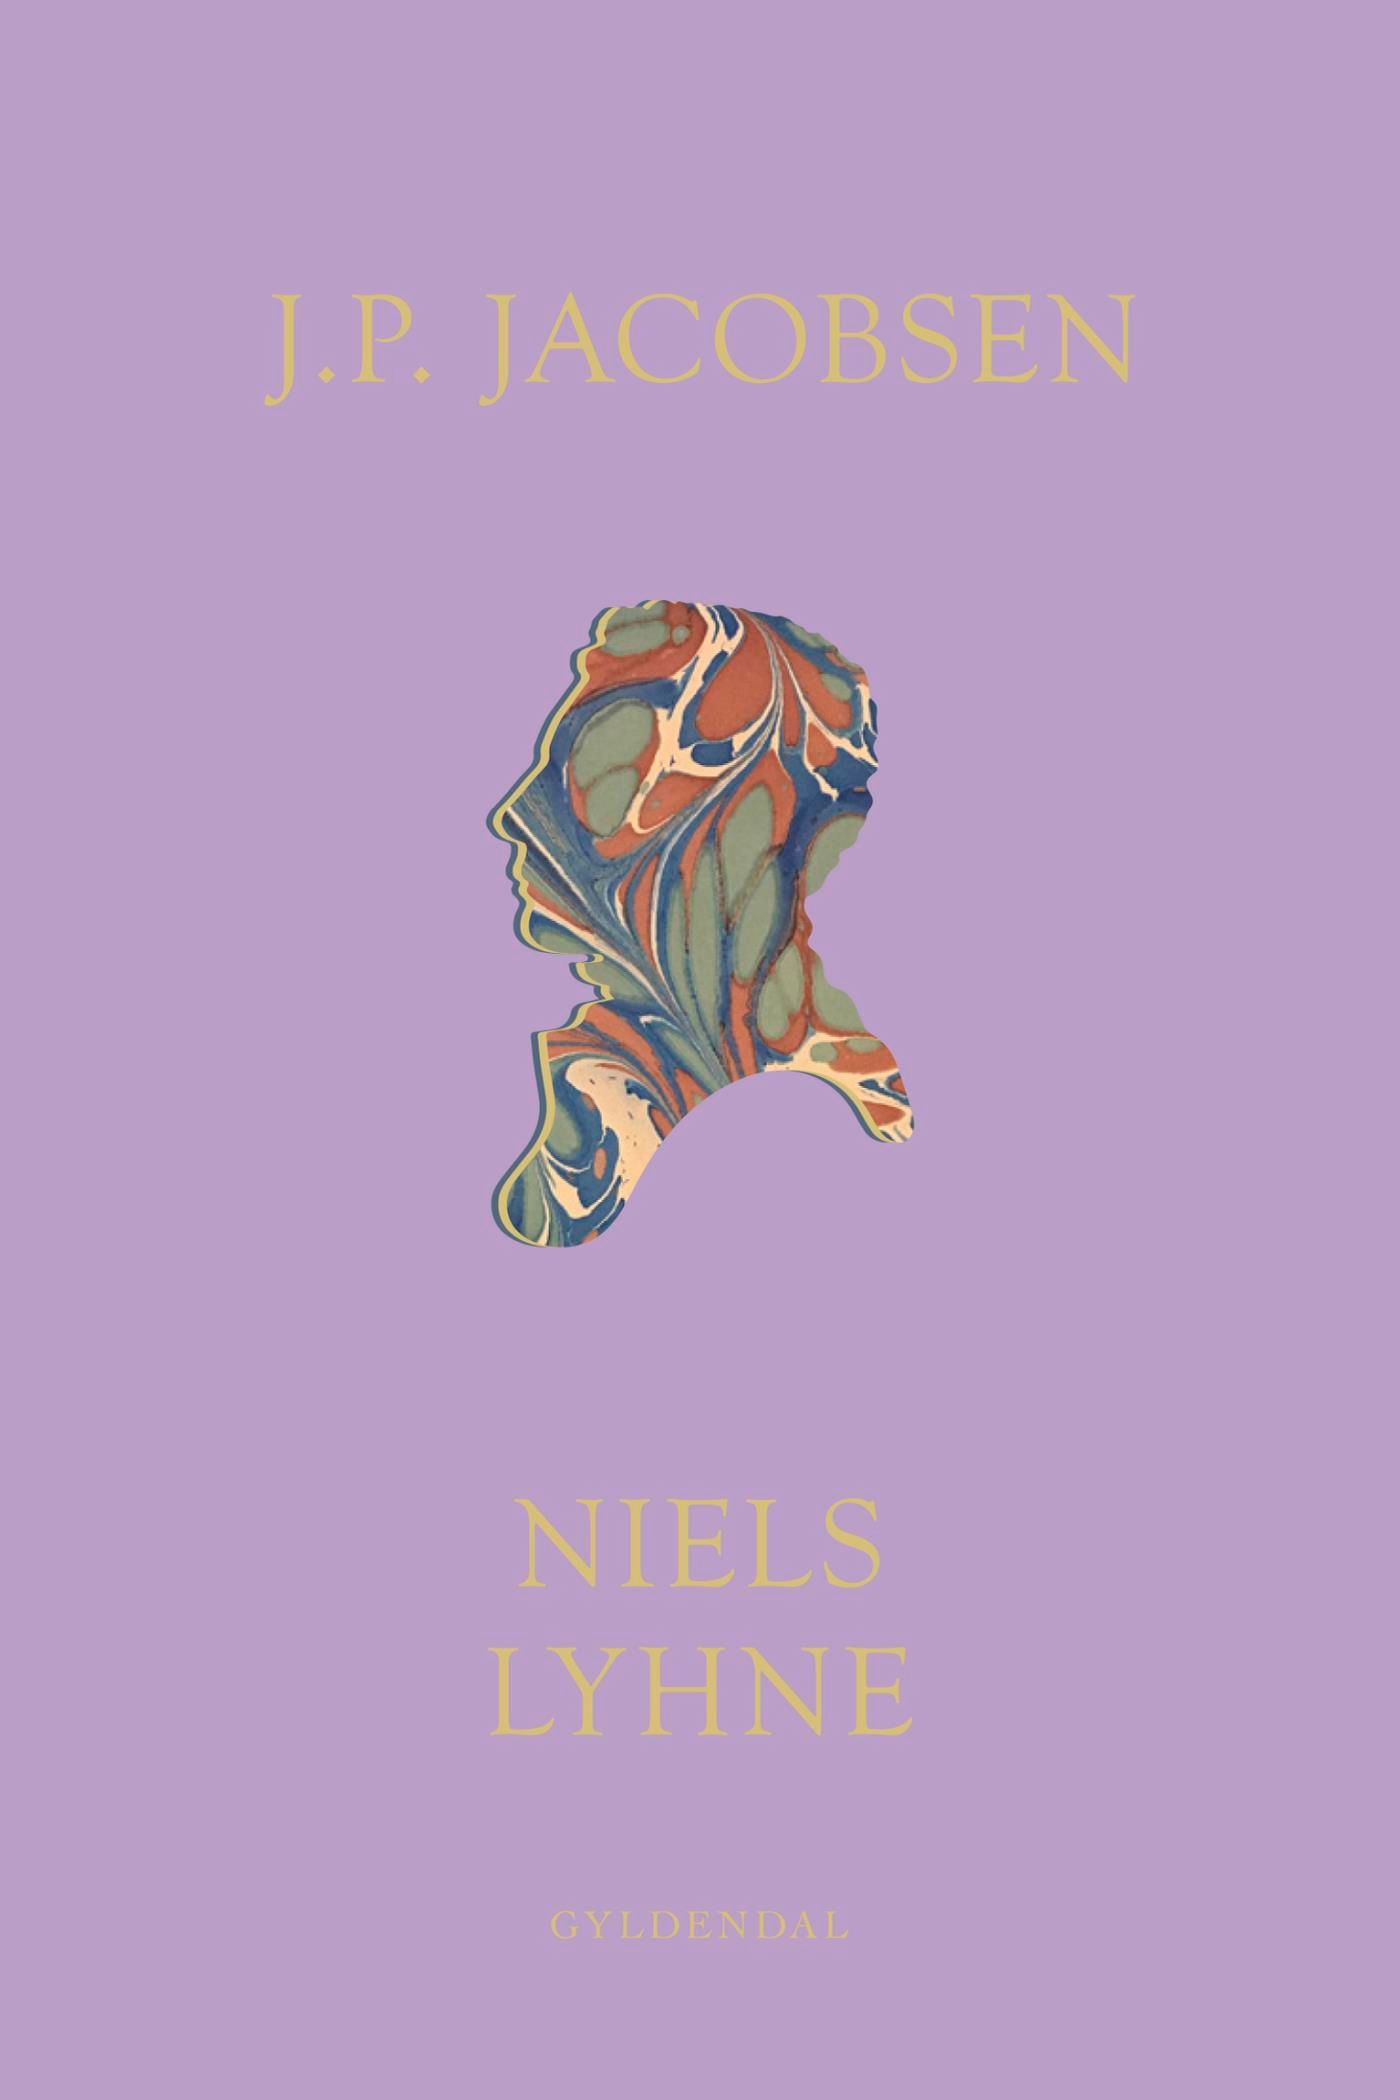 Niels Lyhne, eBook by J.P. Jacobsen